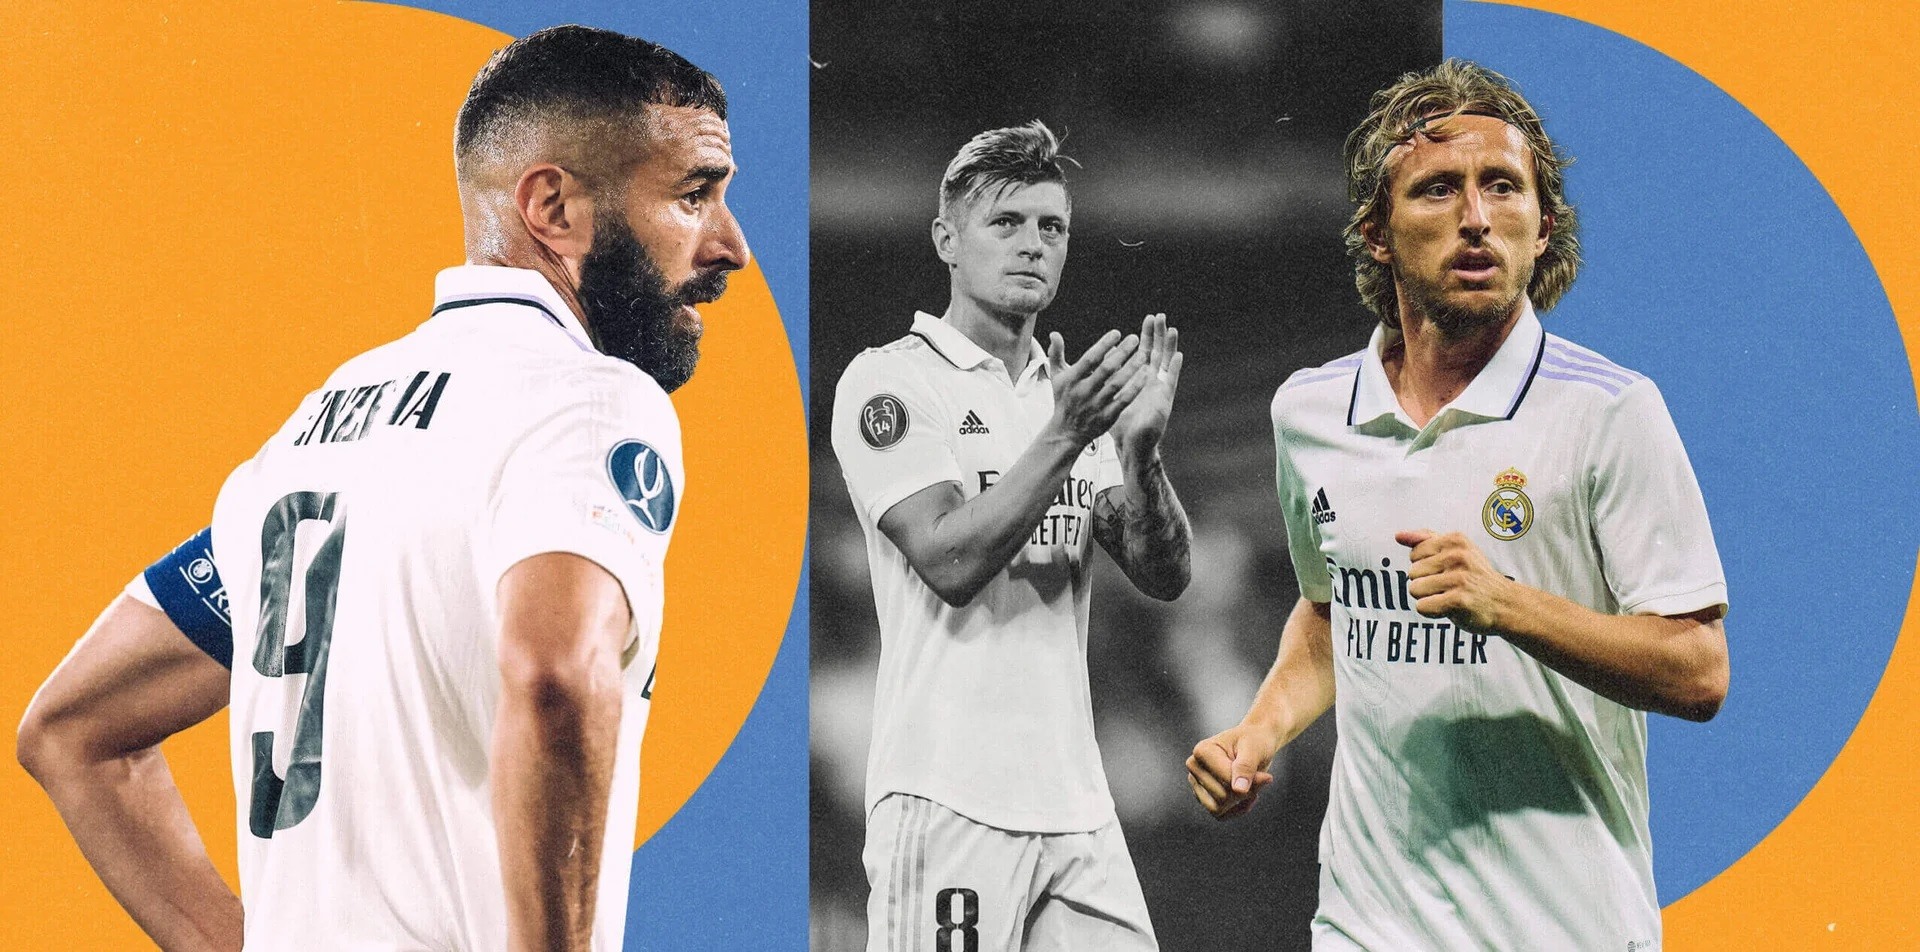 Benzema, Modric, Kroos và những bản hợp đồng định hình Real Madrid